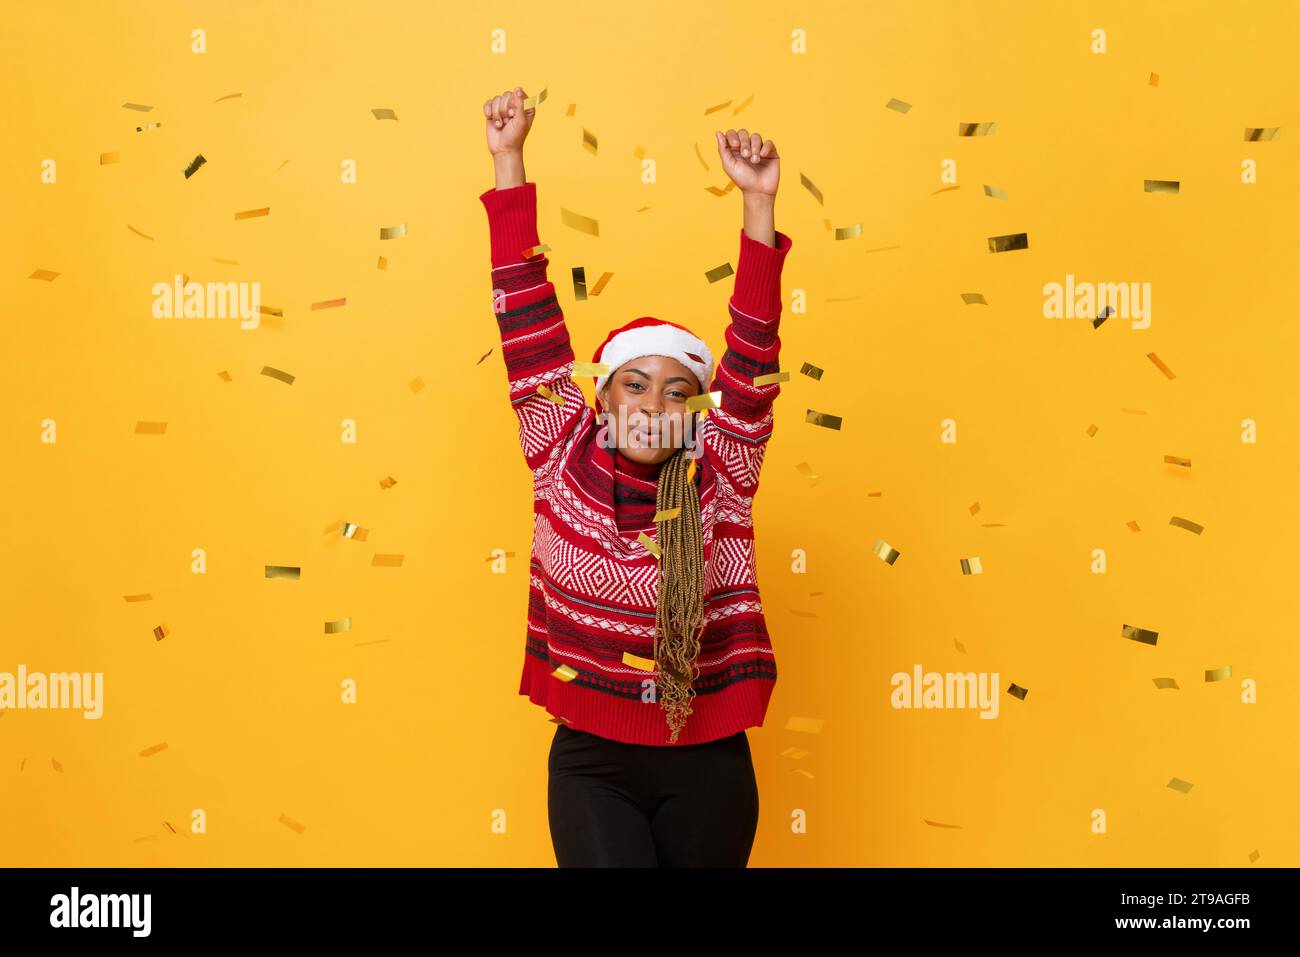 Festliches Studio fotografierte Porträt einer fröhlich lächelnden afroamerikanischen Frau, die Weihnachtspullover und Hut in gelbem Hintergrund mit Konfetti trägt Stockfoto